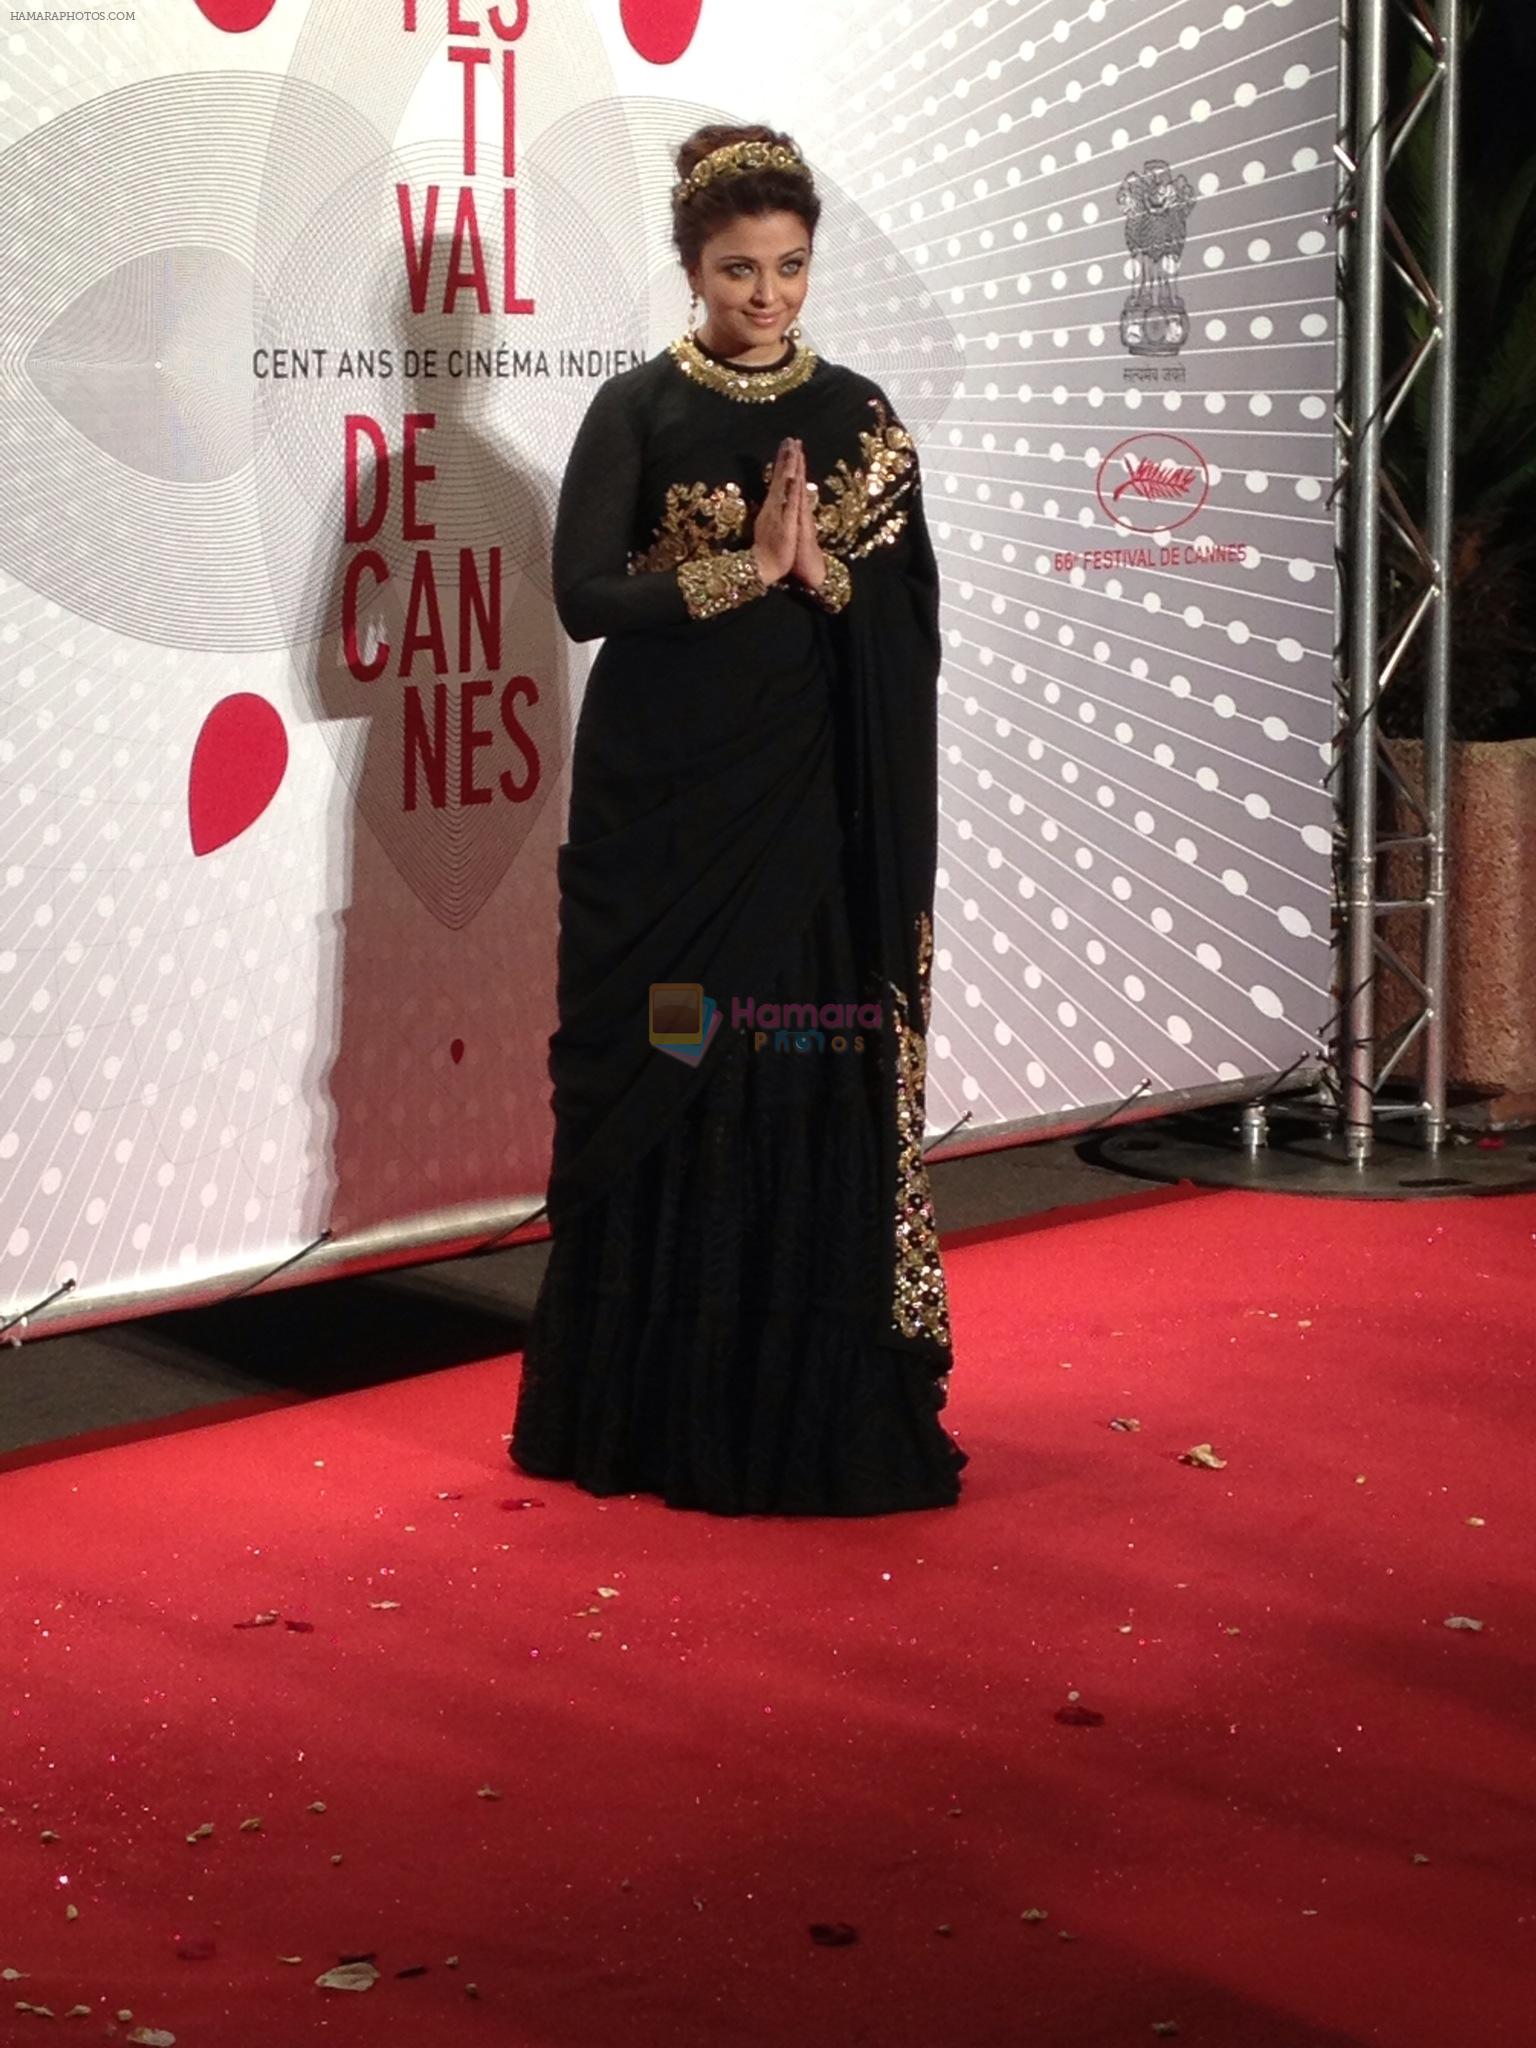 Aishwarya Rai Bachchan at Cannes Film Festival 2013 - Day 1 & 2 on 19th May 2013